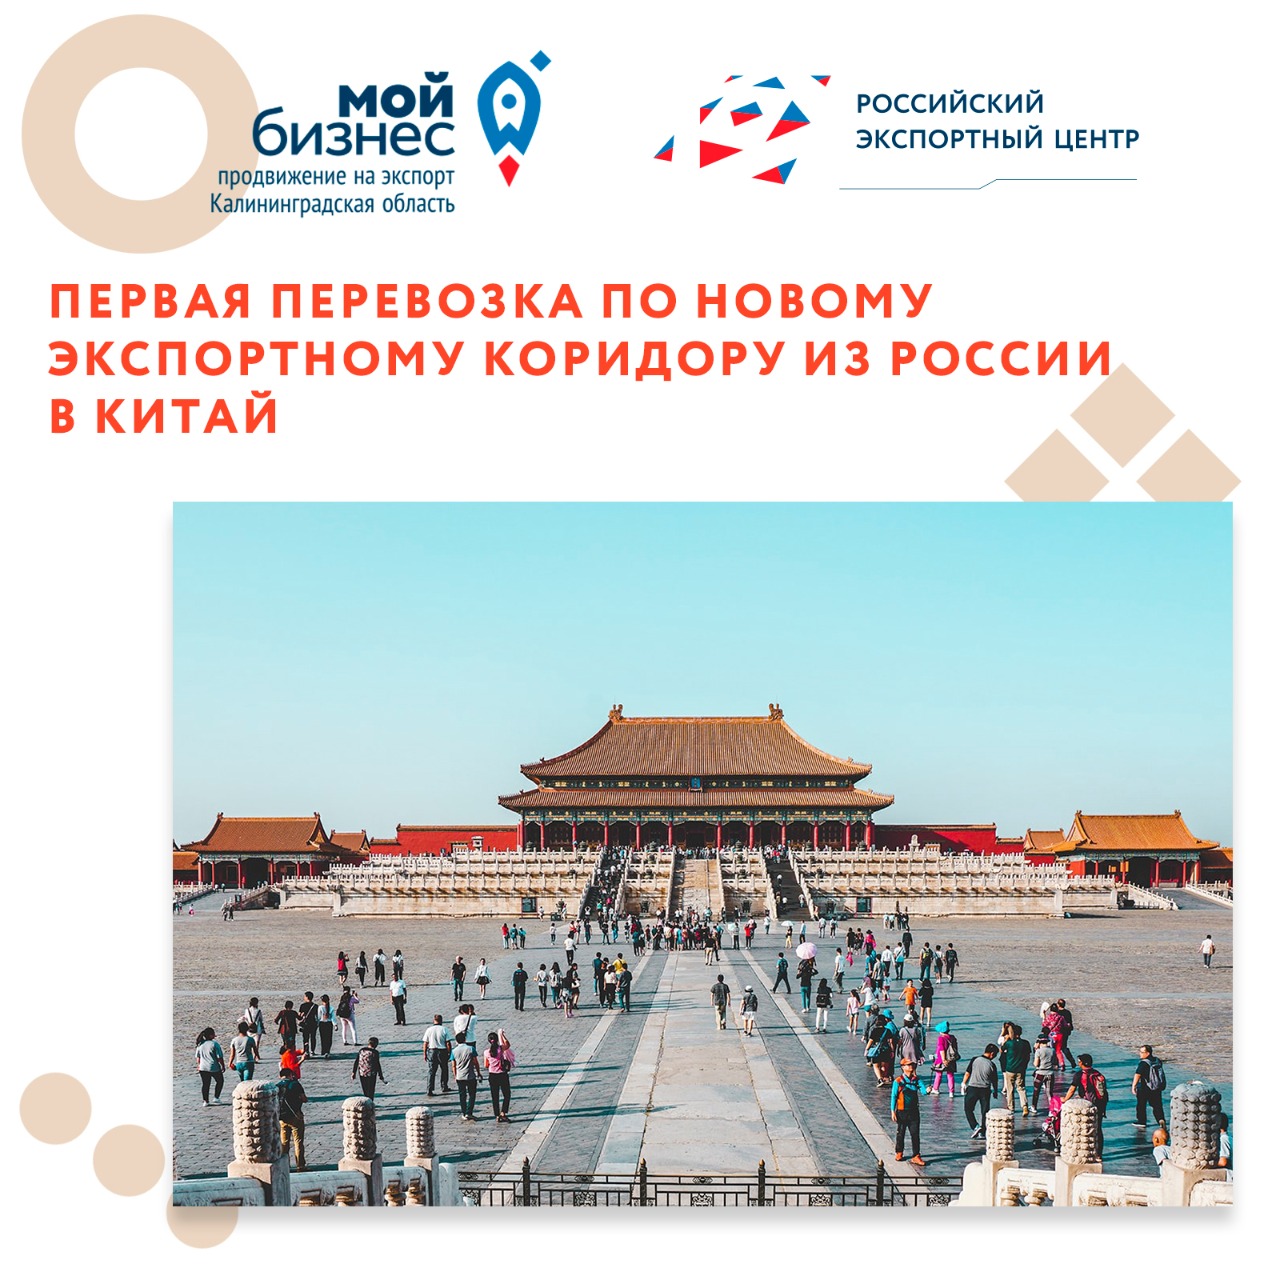 Первая перевозка по новому экспортному коридору из России в Китай